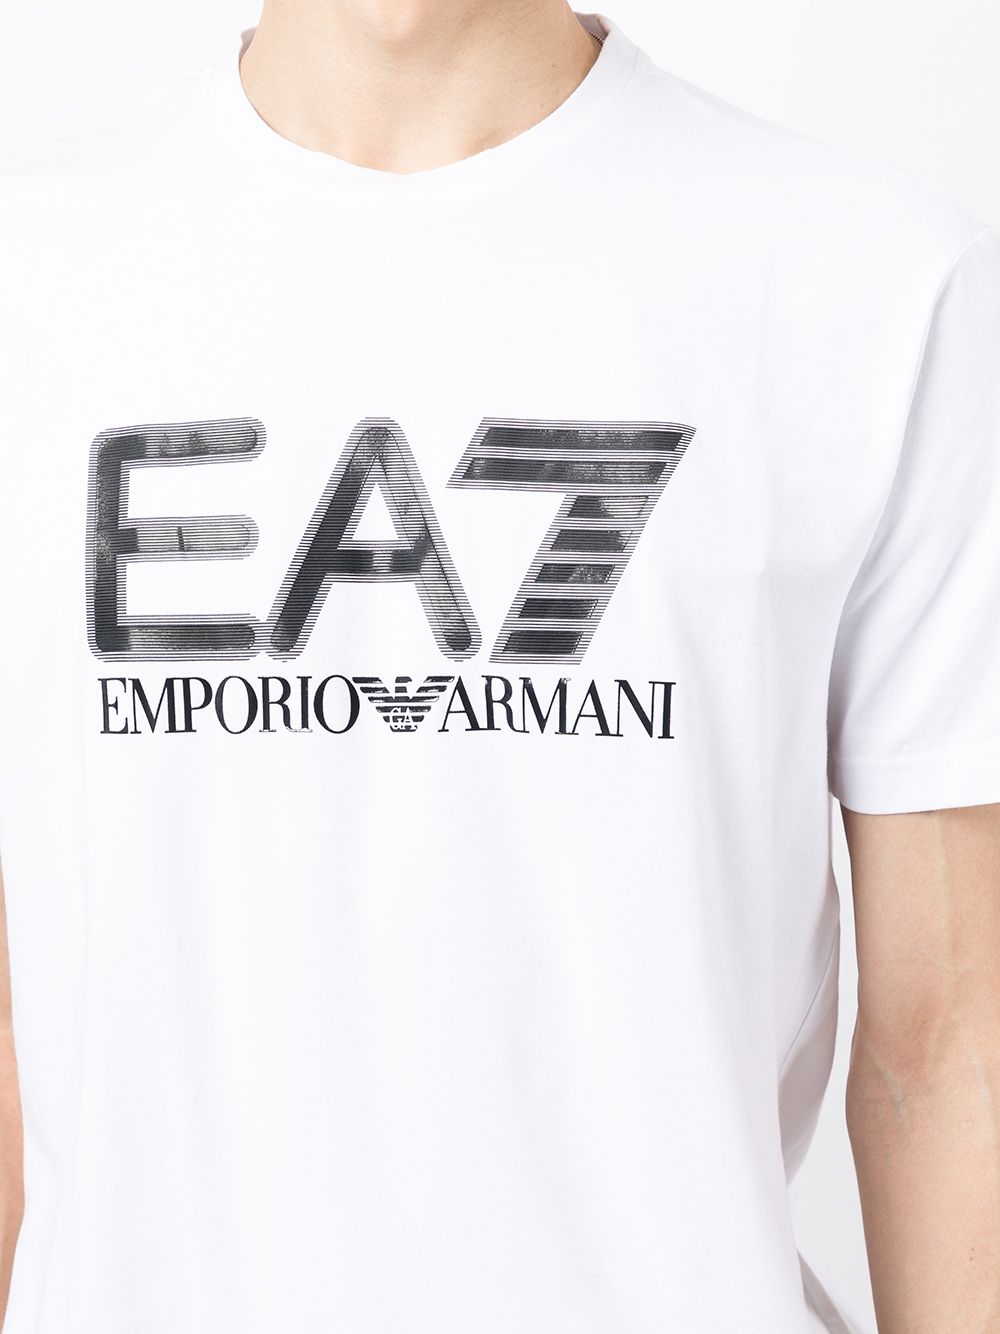 фото Ea7 emporio armani футболка с логотипом